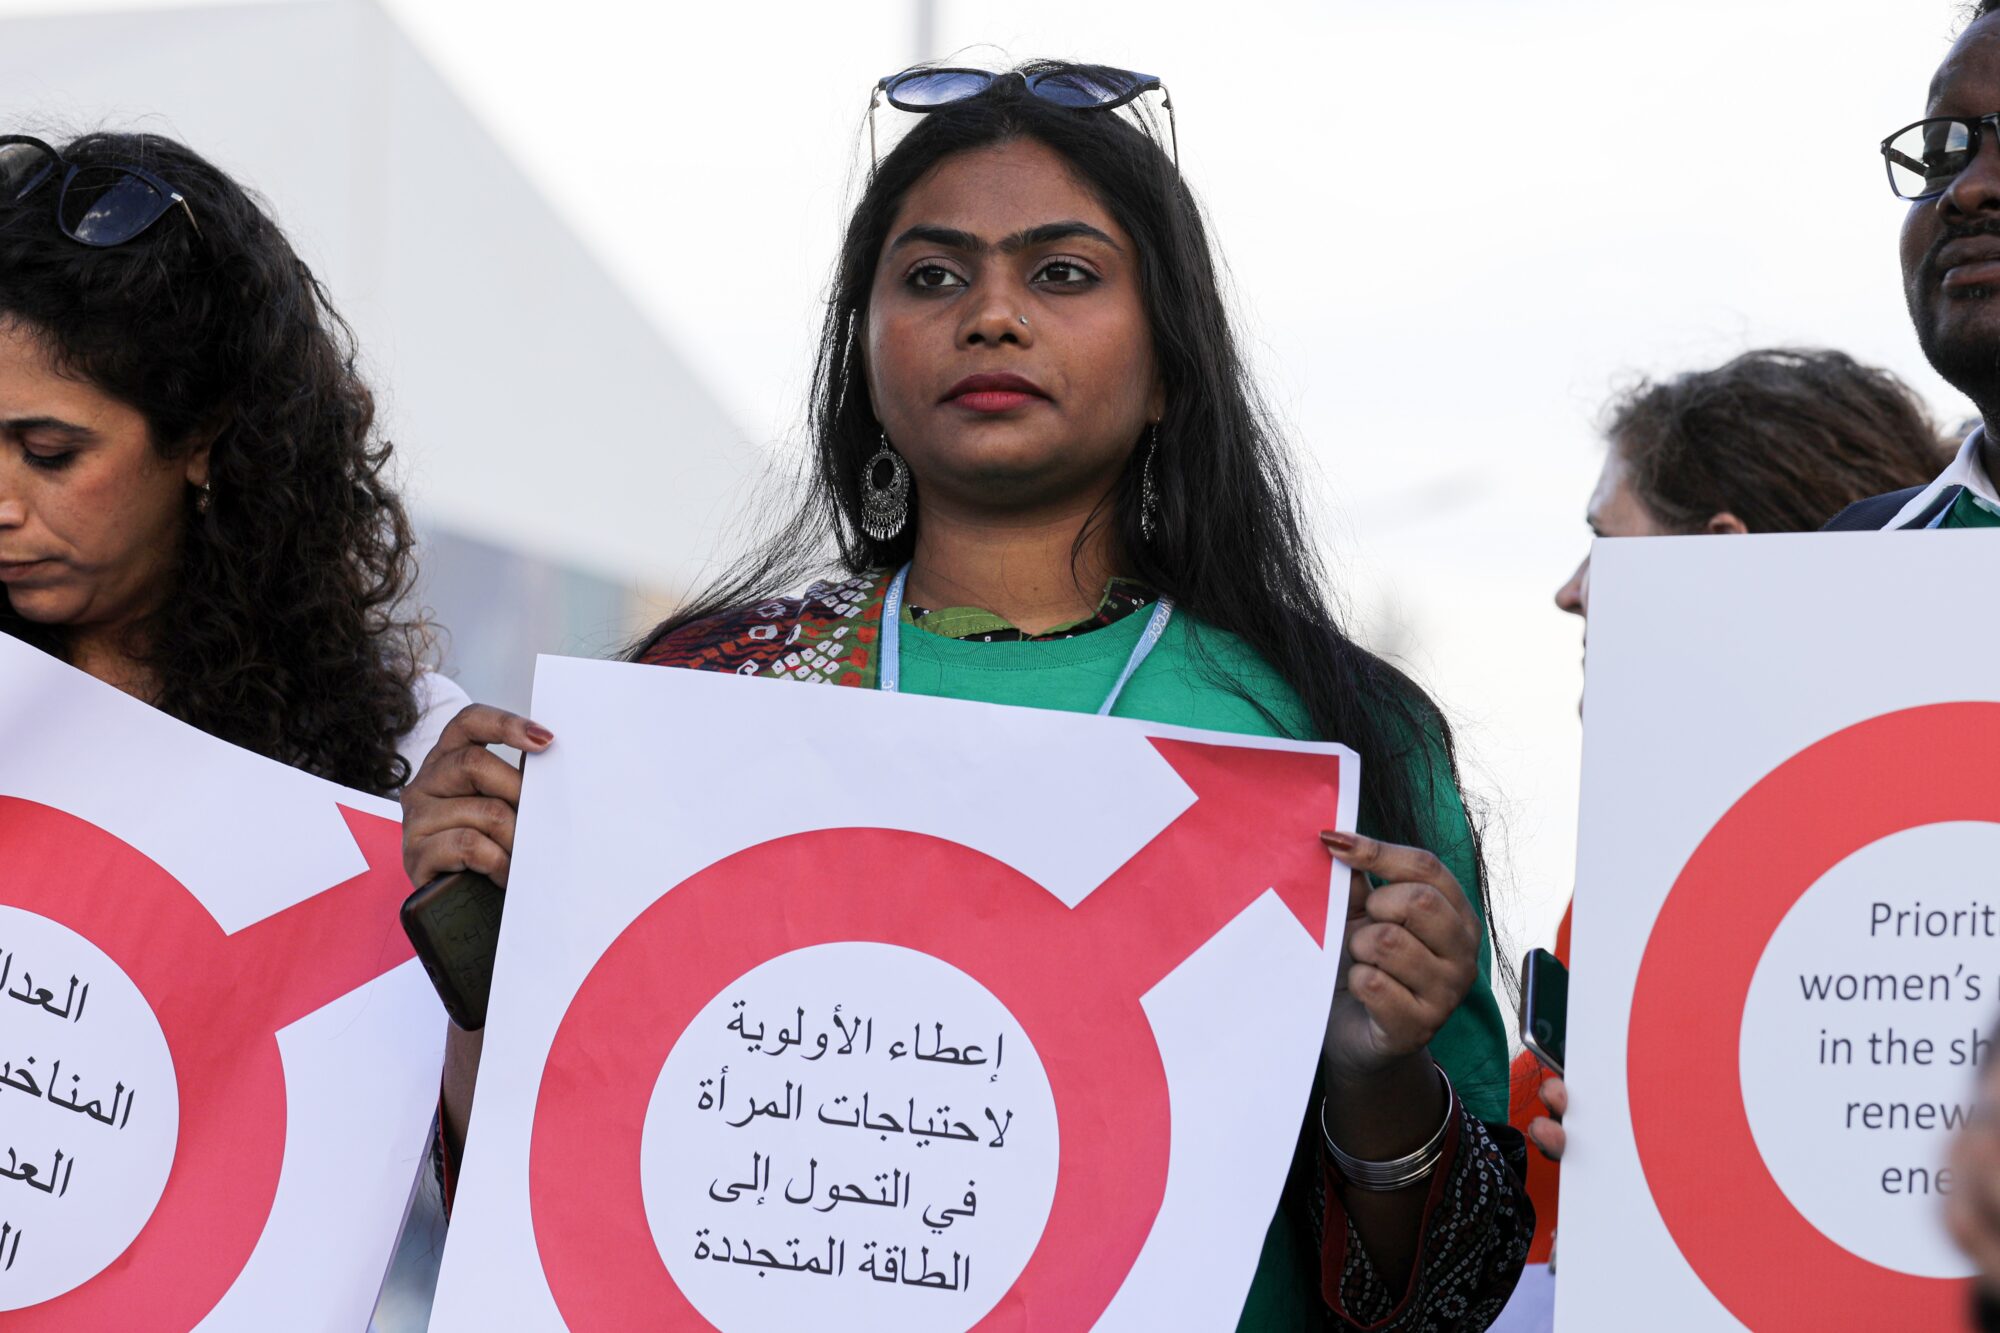 Mujeres se manifiestan en la COP27 pidiendo más acción climática con perspectiva de género